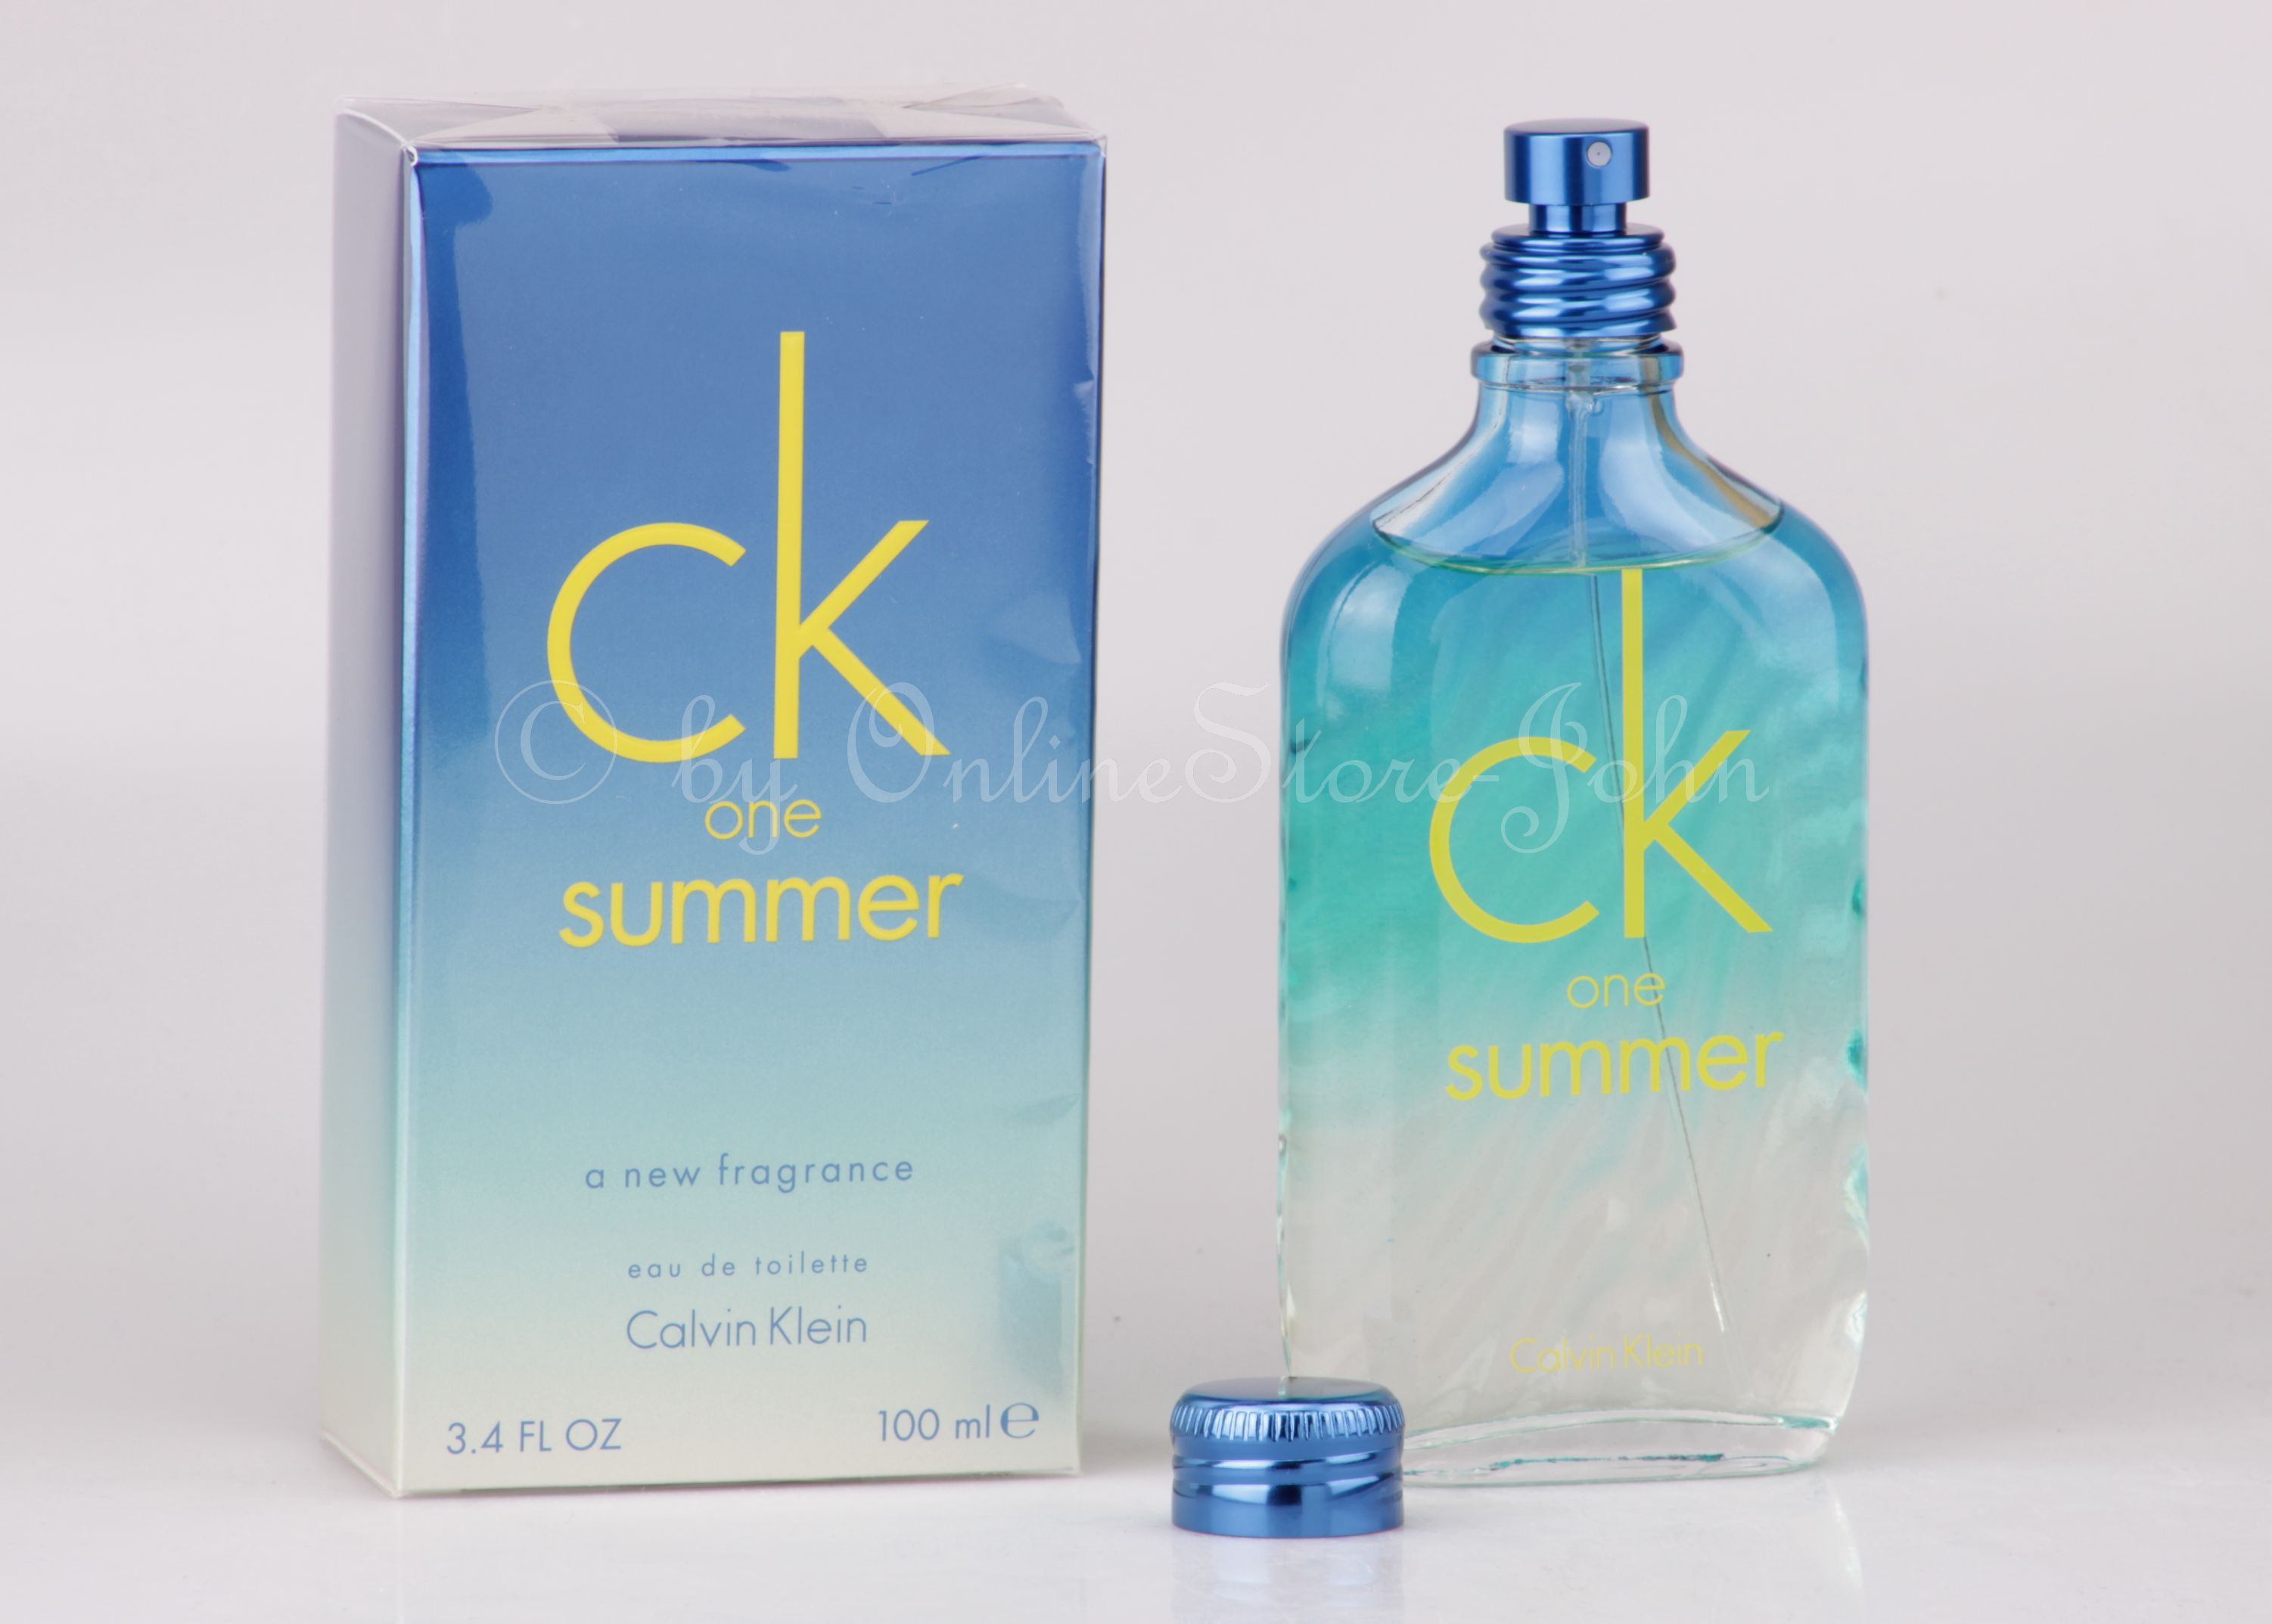 Calvin Klein - CK ONE Summer 2015 - 100ml EDT Eau de Toilette NIP | eBay